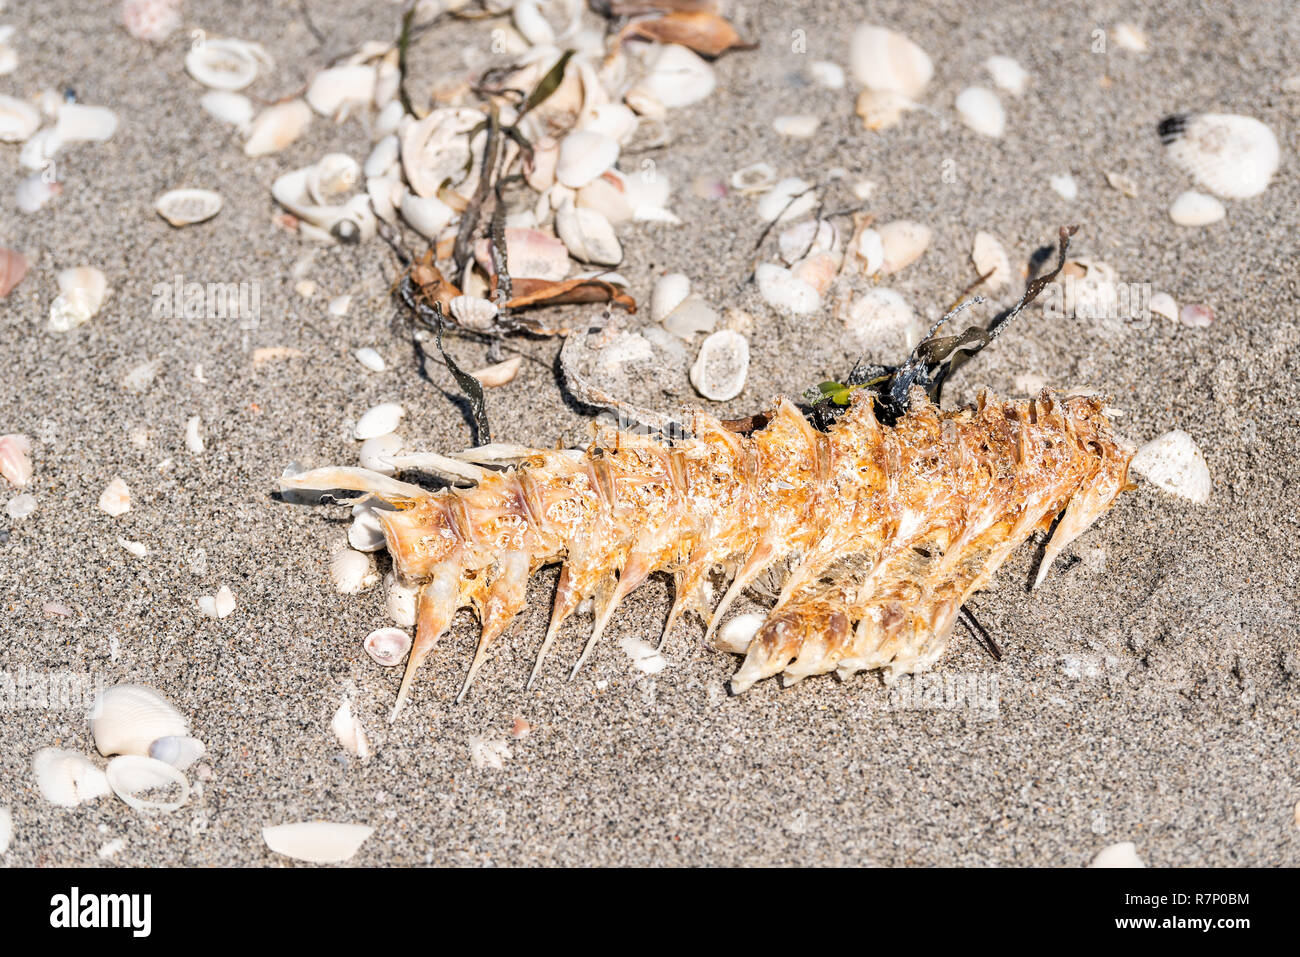 Viele Muscheln Muscheln Muscheln auf Sanibel Island, Florida während des Tages am Golf von Mexiko Küste, Fisch Skelett Knochen, Karkasse Stockfoto